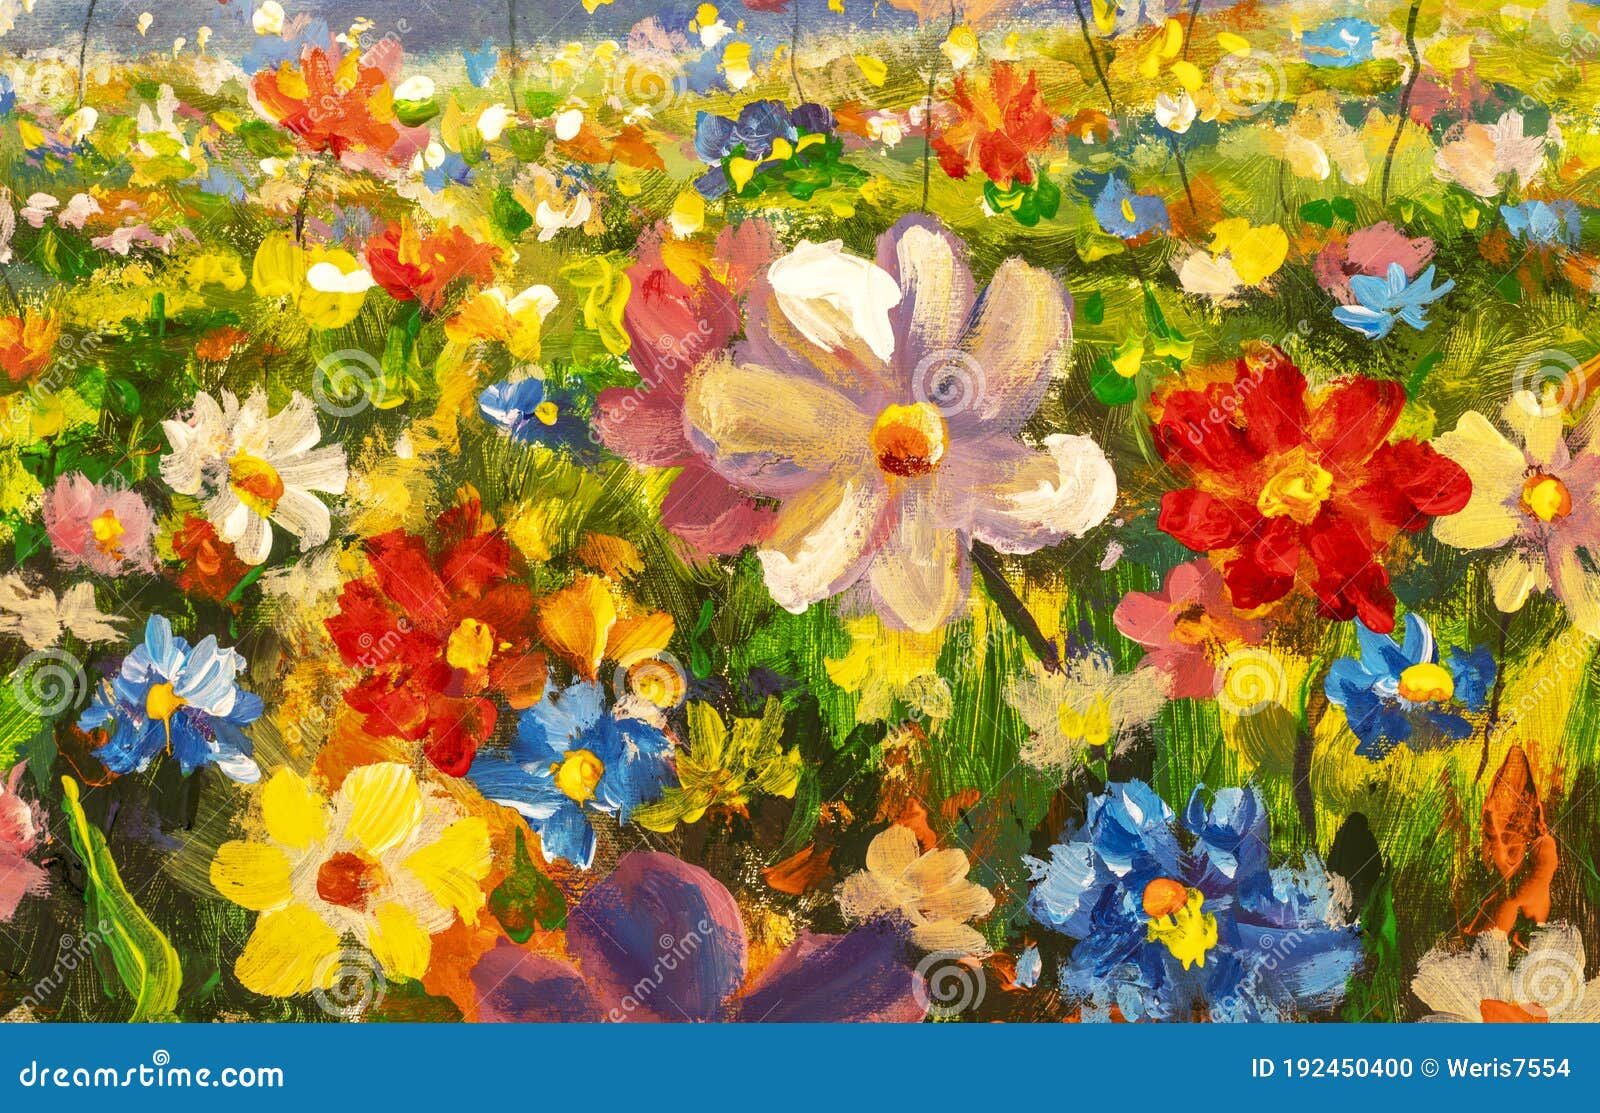 Pintura Al óleo De Pradera De Flores De Paisaje Foto de archivo - Imagen de  pinturas, flor: 192450400